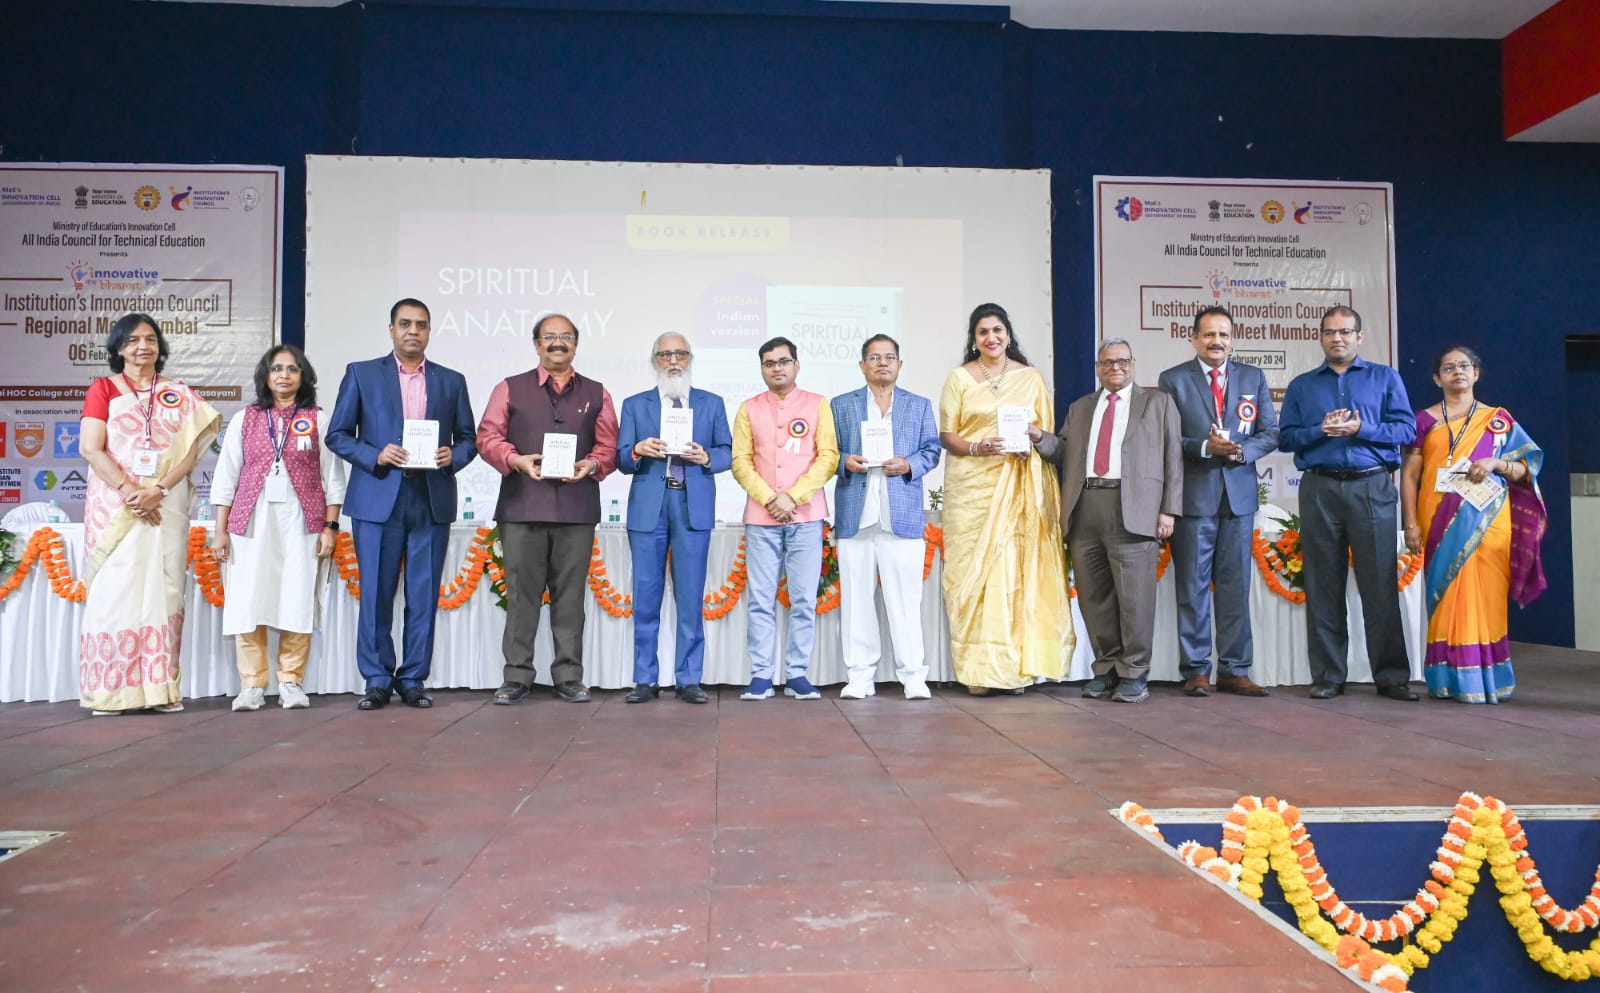 इंस्टीट्यूट इनोवेशन काउंसिल की क्षेत्रीय बैठक दाजी द्वारा नवीनतम अंतरराष्ट्रीय बेस्टसेलर ‘स्पिरिचुअल एनाटॉमी’ के भारतीय संस्करण का भव्य विमोचन